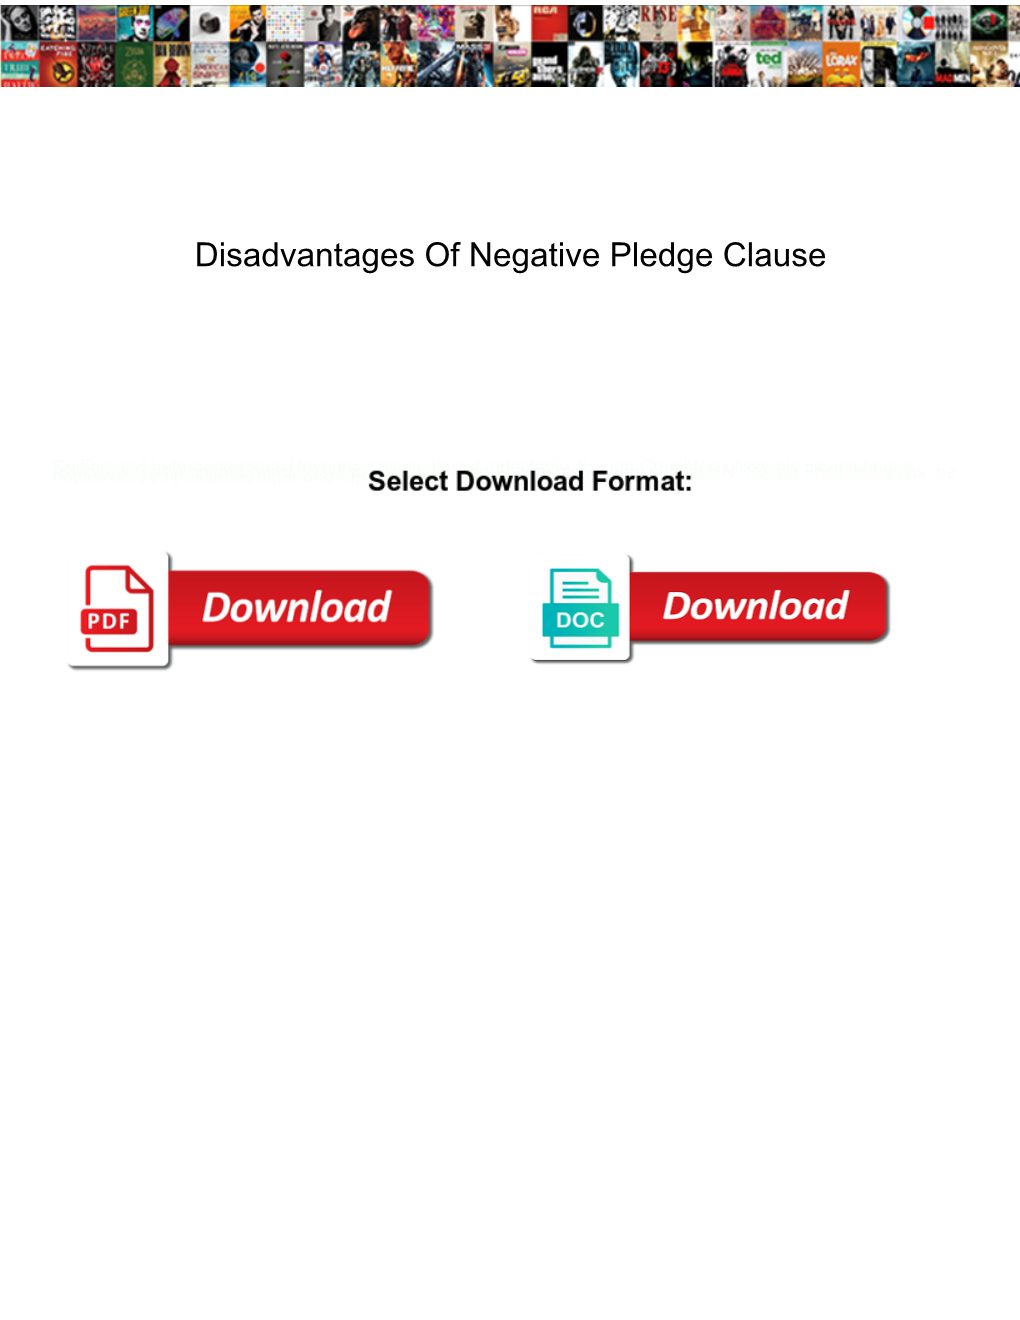 Disadvantages of Negative Pledge Clause